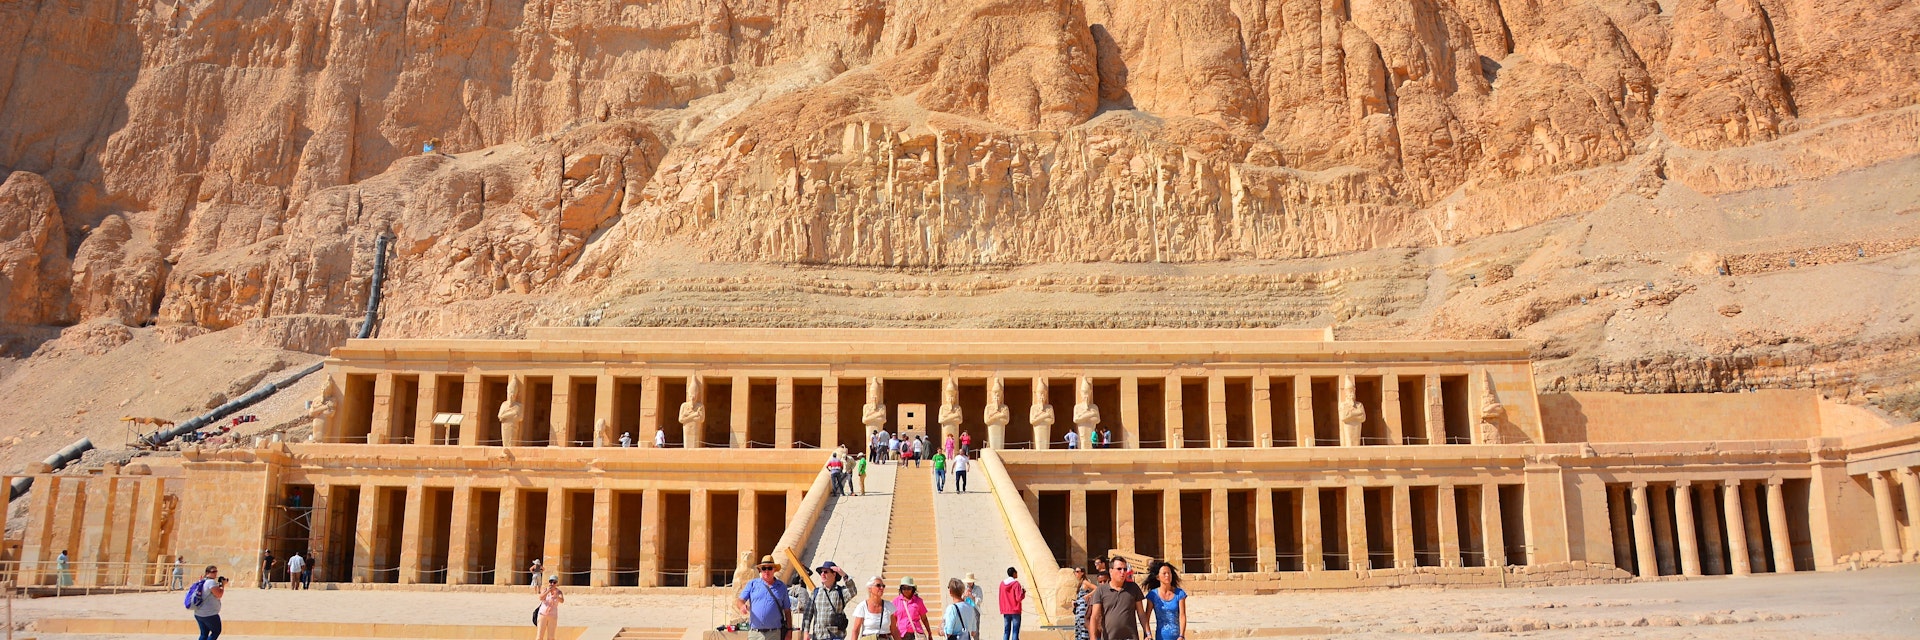 Hatshepsut Temple in Luxor.